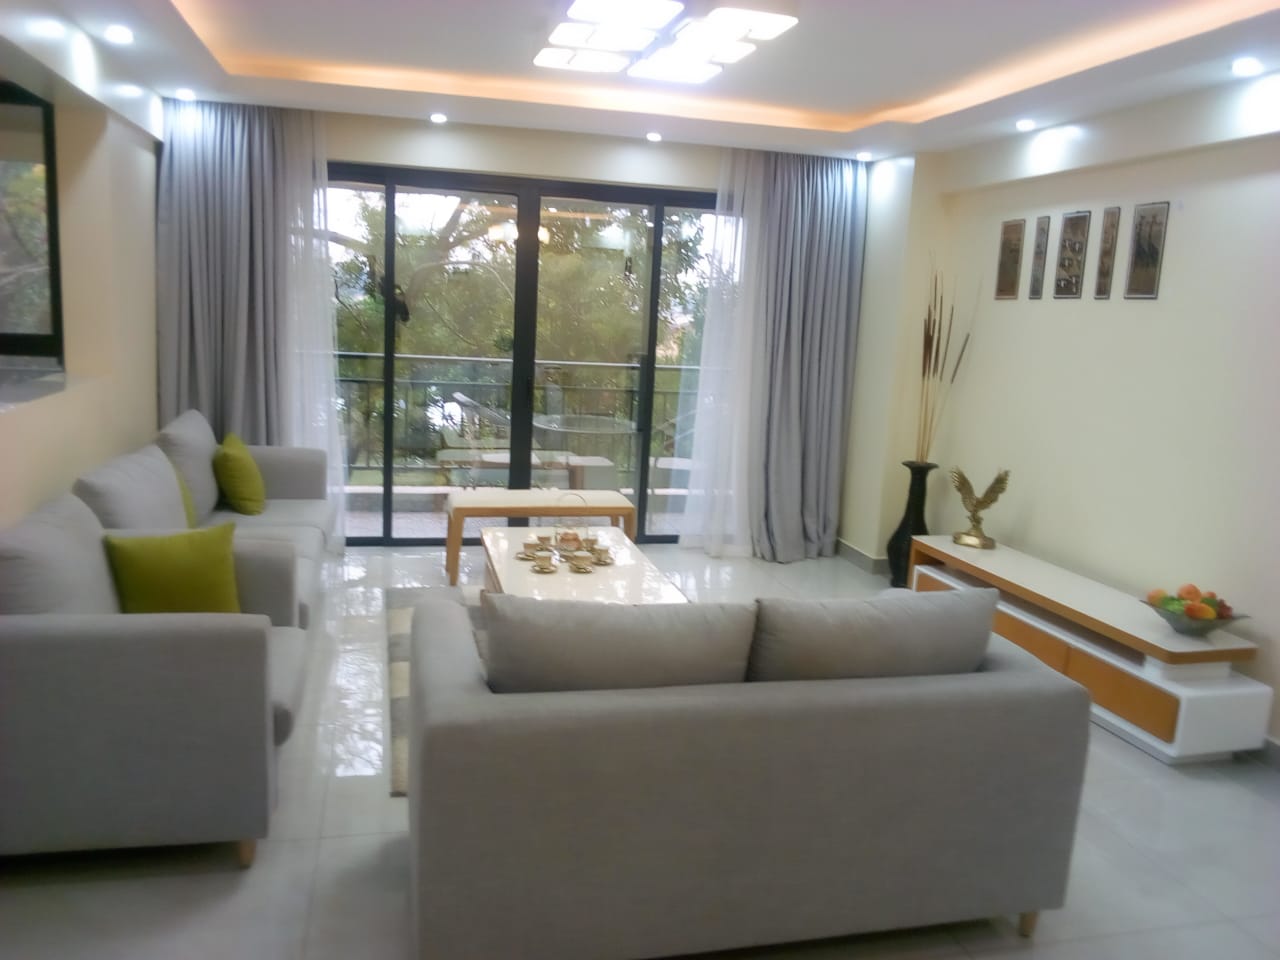 Apartment at Ngong Rd, Kilimani